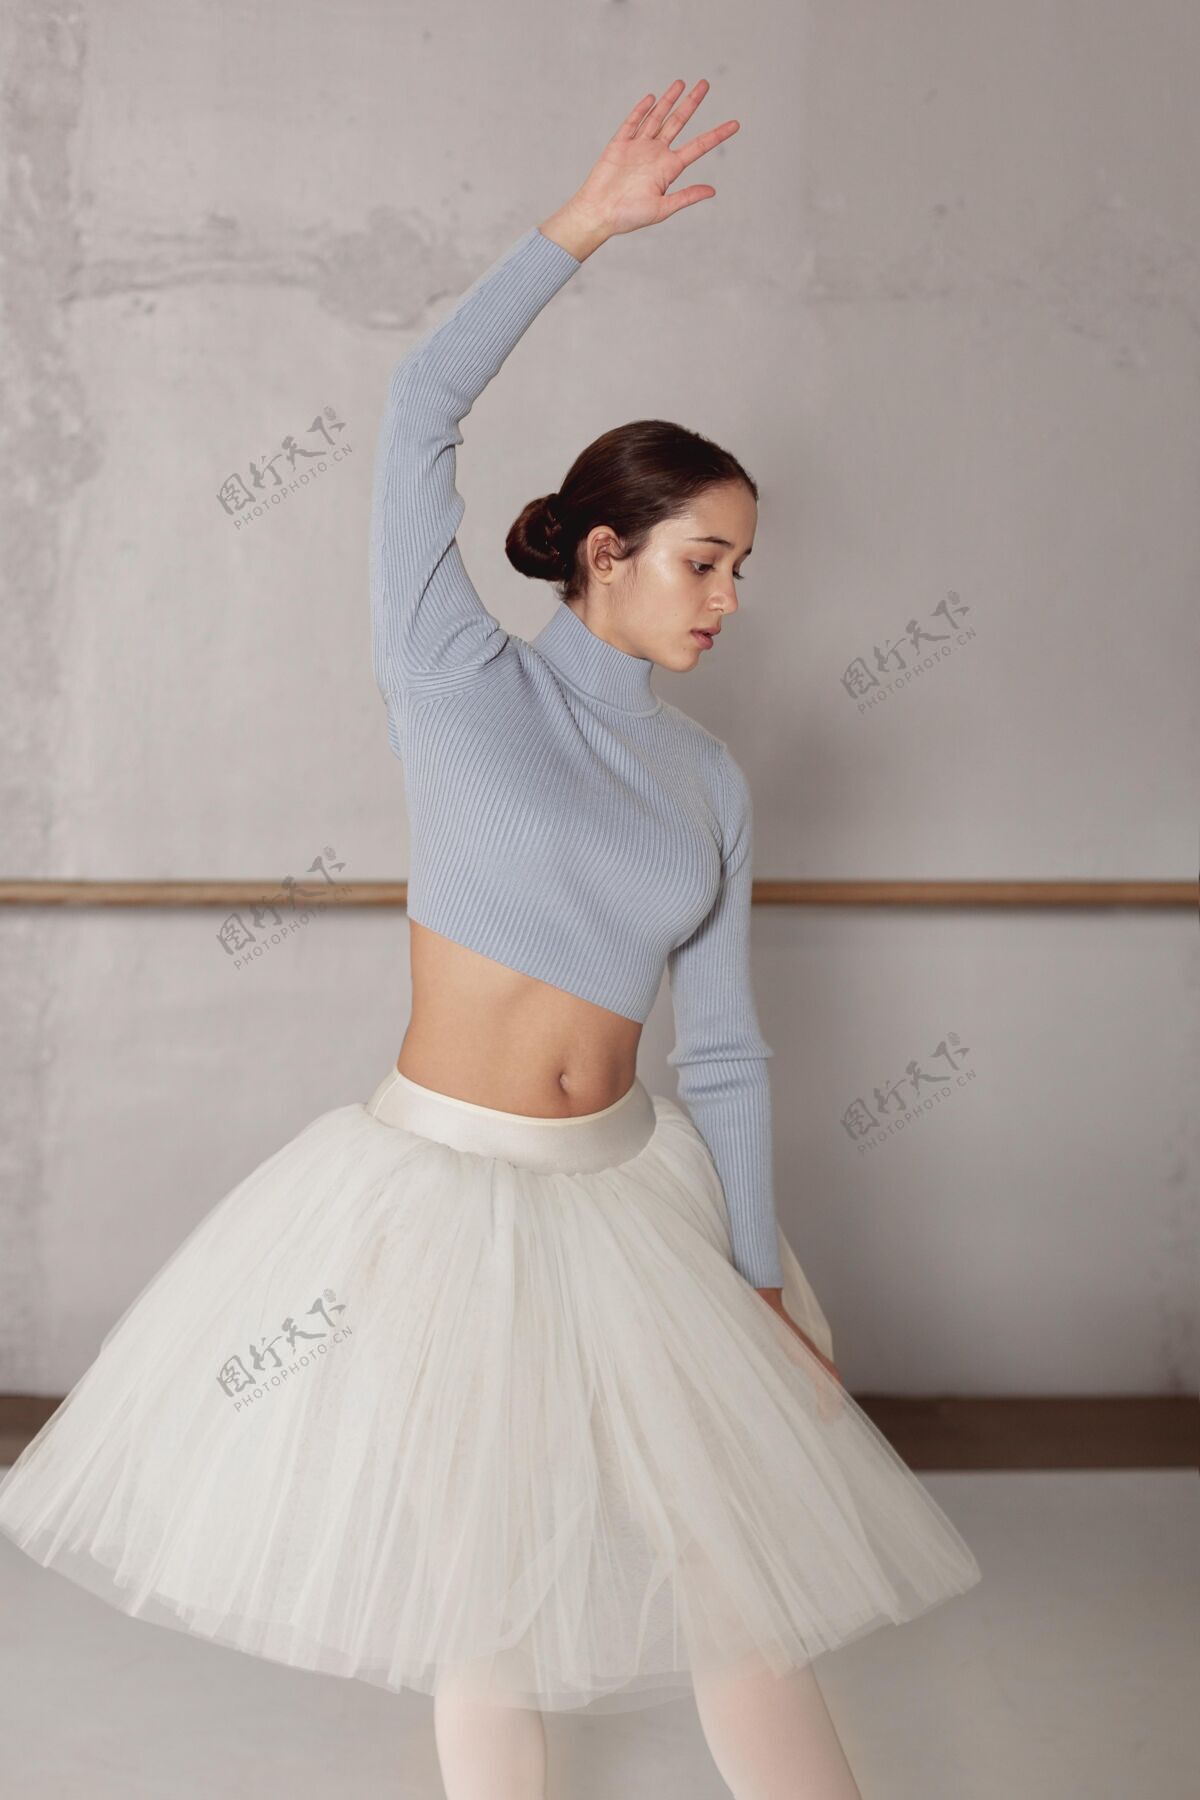 女芭蕾舞演员穿着芭蕾舞裙练习芭蕾的前视图芭蕾舞演员芭蕾专业